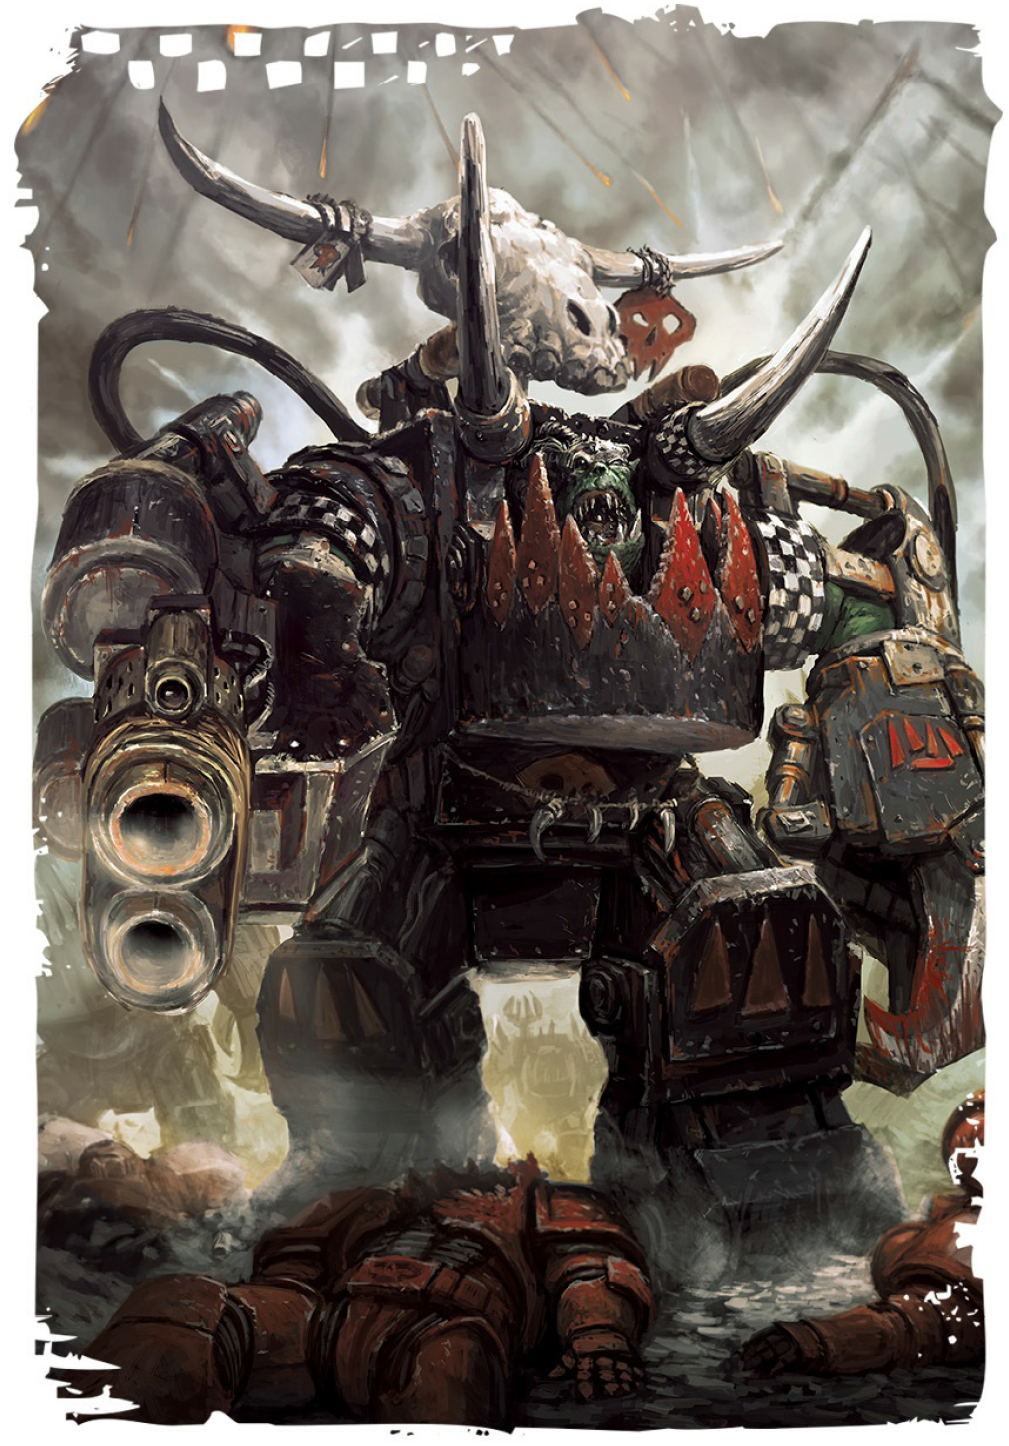 Can you explain the character of Ghazghkull Thraka in Warhammer 40k?